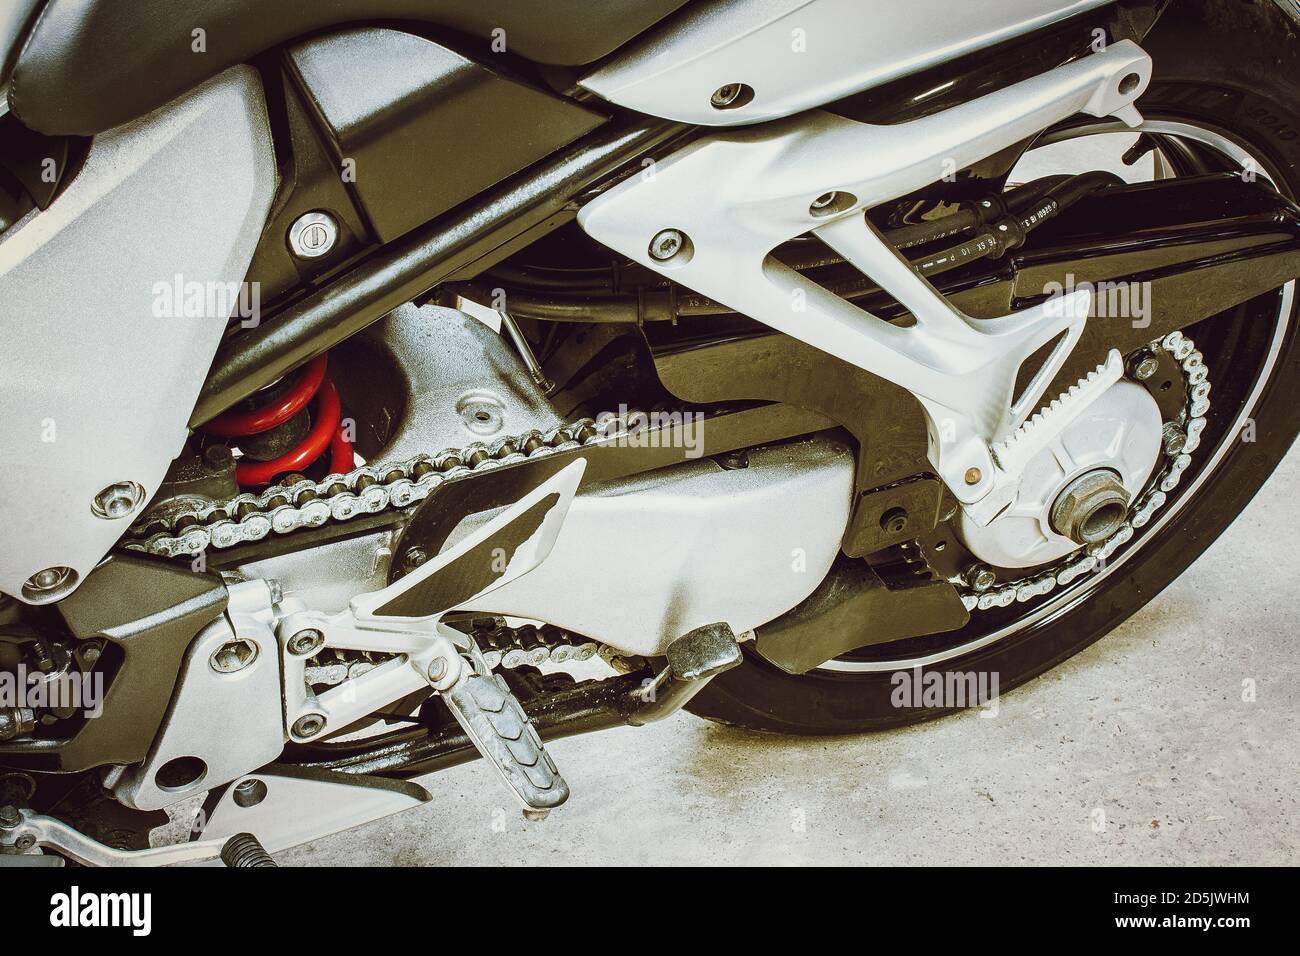 Vue rapprochée de l'arrière de la moto, des pièces de transmission en métal et en chrome. Roue arrière, cadre en fer, chaîne, disque, ressort de sportbike dans une photo de couleur à angle bas en g Banque D'Images